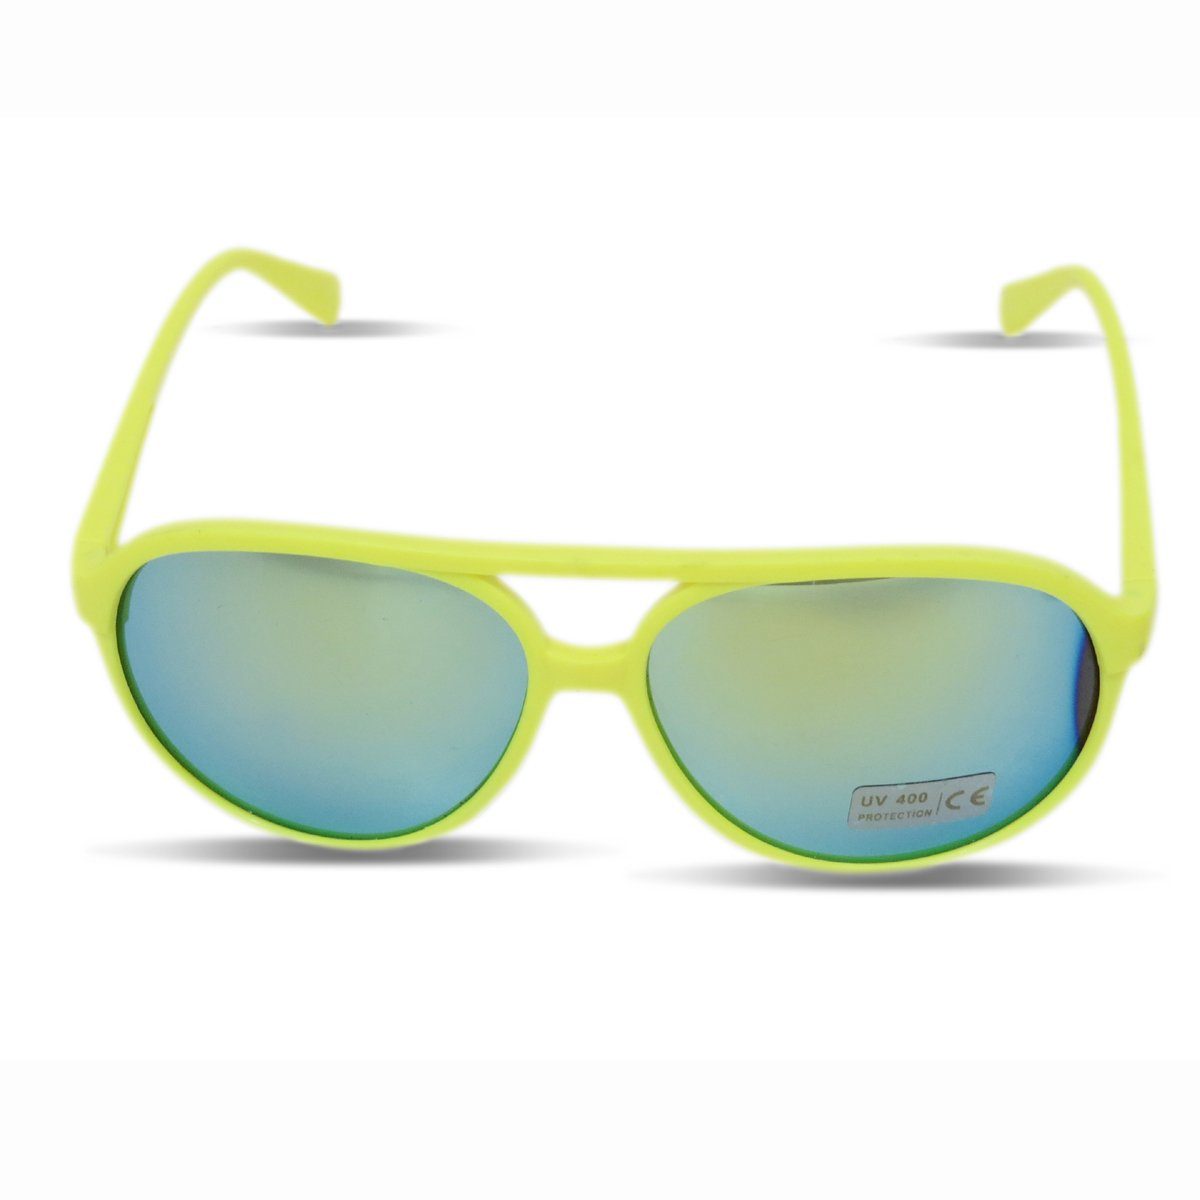 Sonia Originelli Sonnenbrille Sonnenbrille Neon Knallig Verspiegelt Fun Brille Onesize, Gläser: Verspiegelt gelb